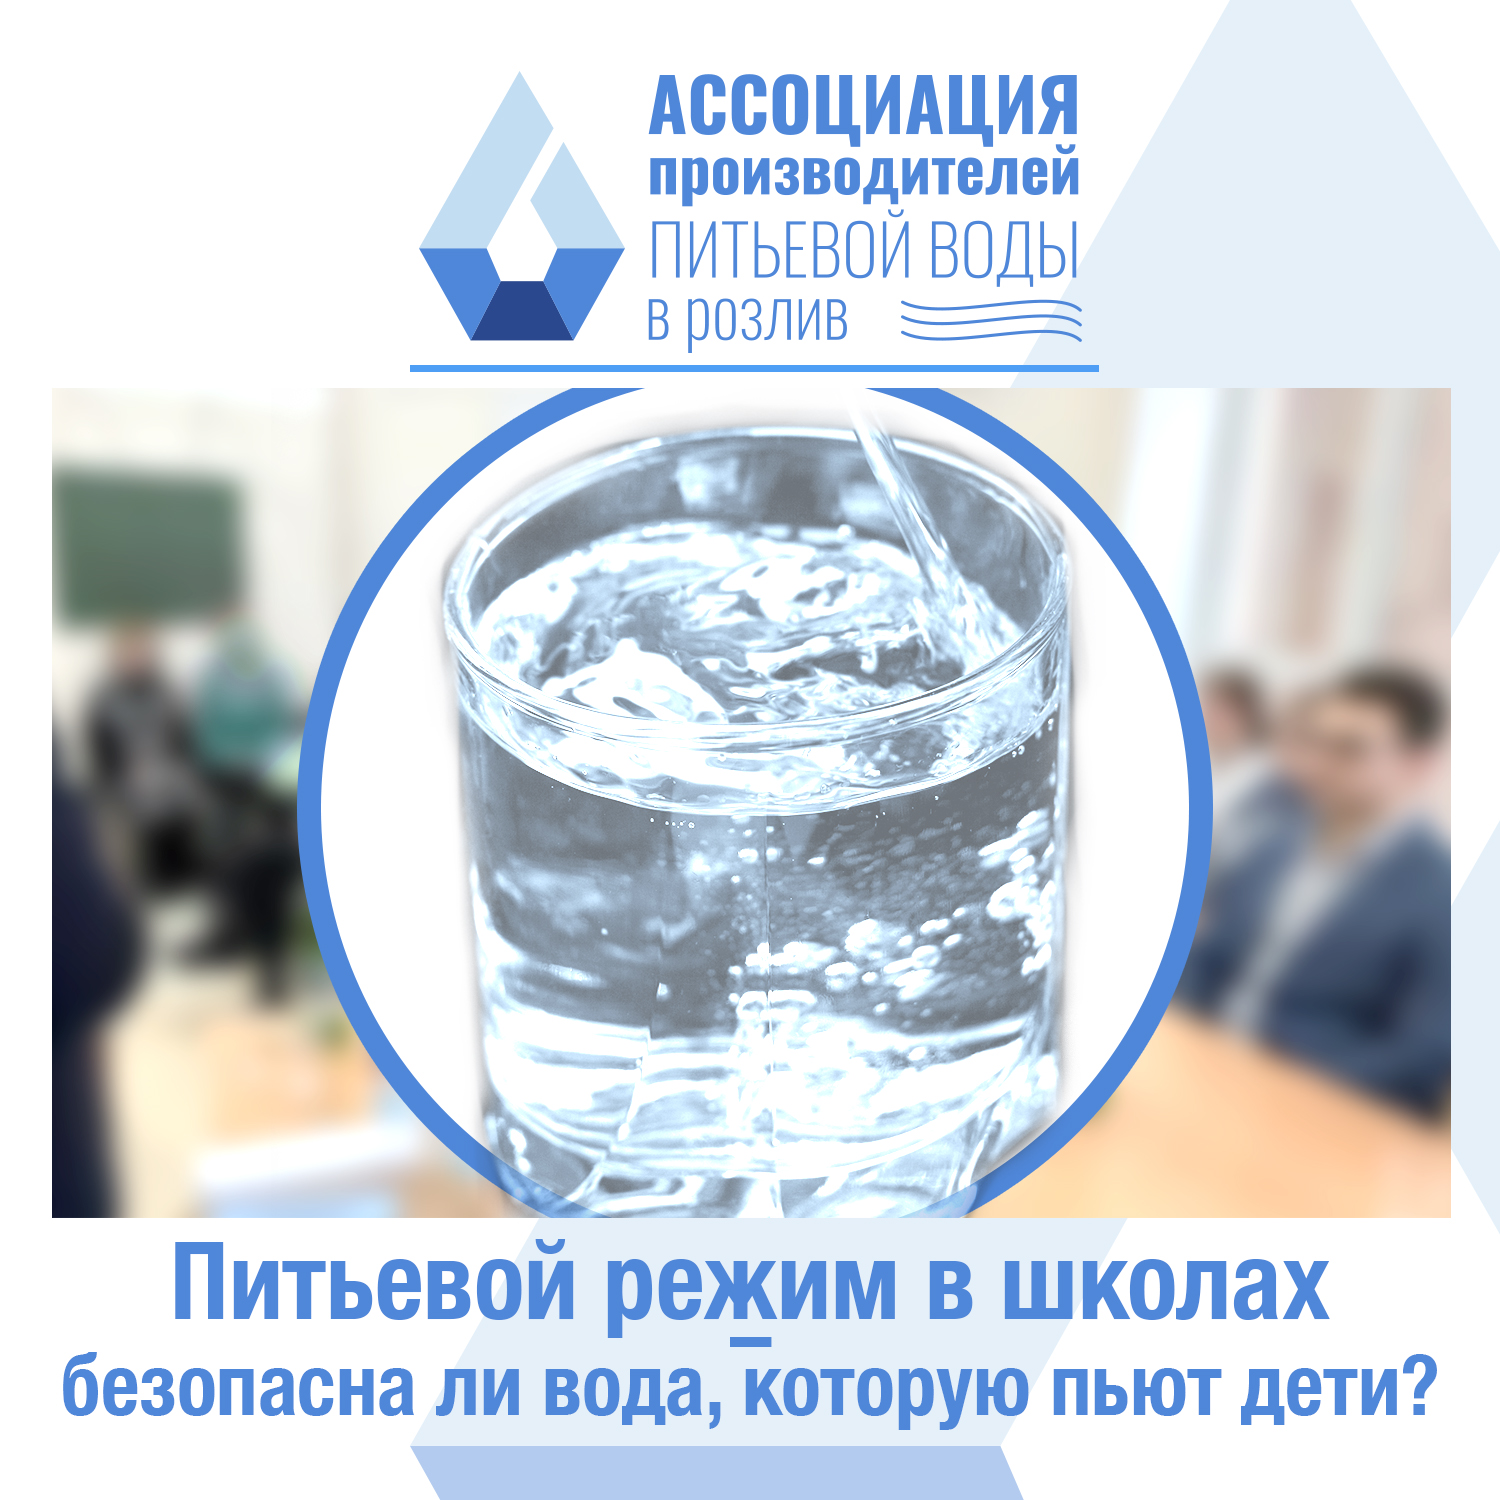 Питьевой режим в школах – безопасна ли вода, которую пьют дети?